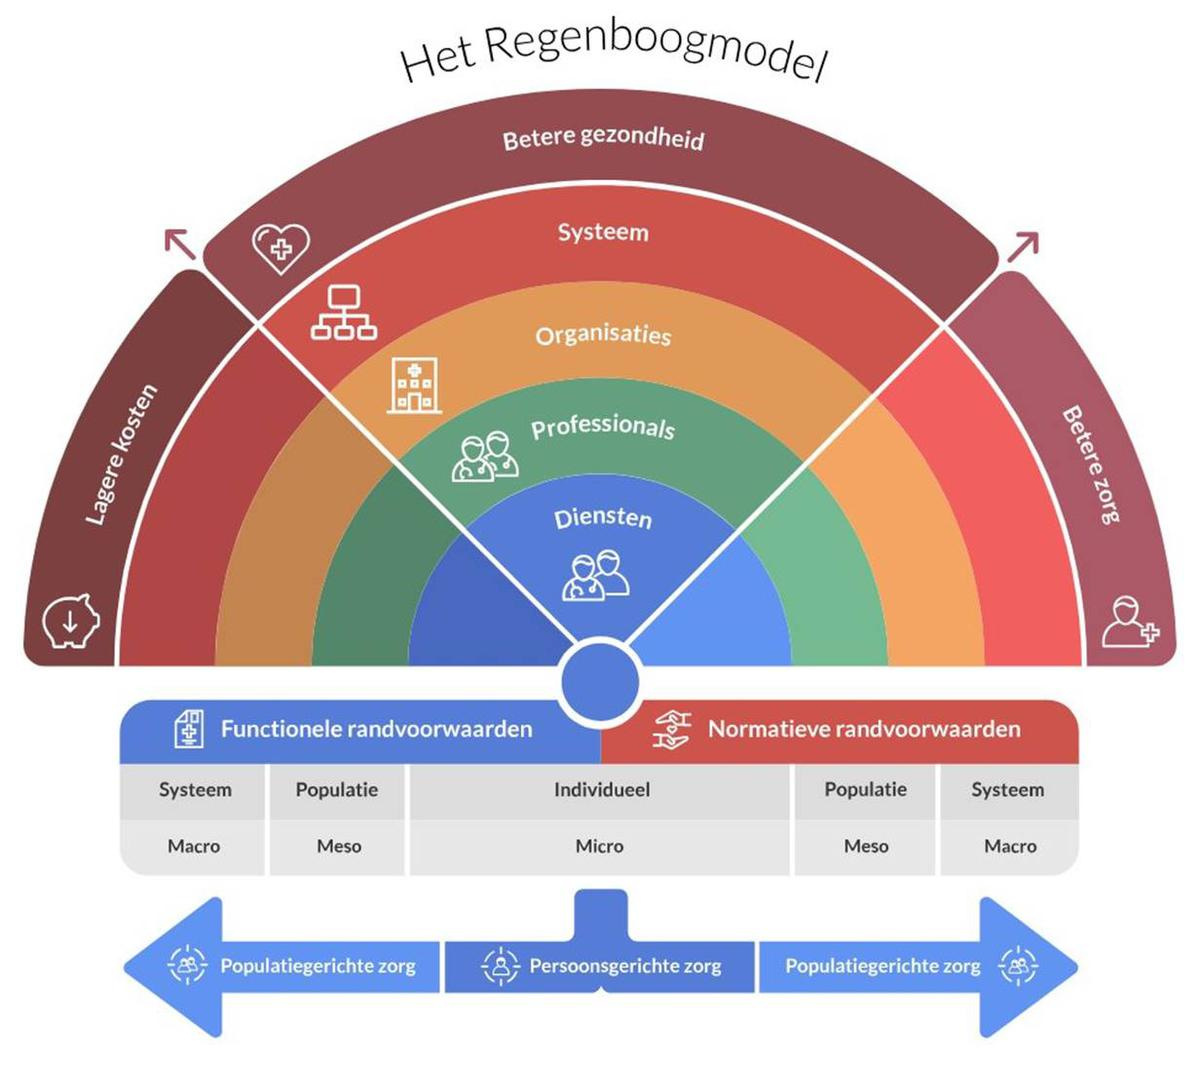 Figuur 2. Model voor geïntegreerde zorg (regenboogmodel) (2). Het Regenboogmodel voor integrale zorg door P.P. Valentijn, 2015. Copyright 2017 door Essenburgh Group, Harderwijk, Nederland. Overgenomen met toestemming.